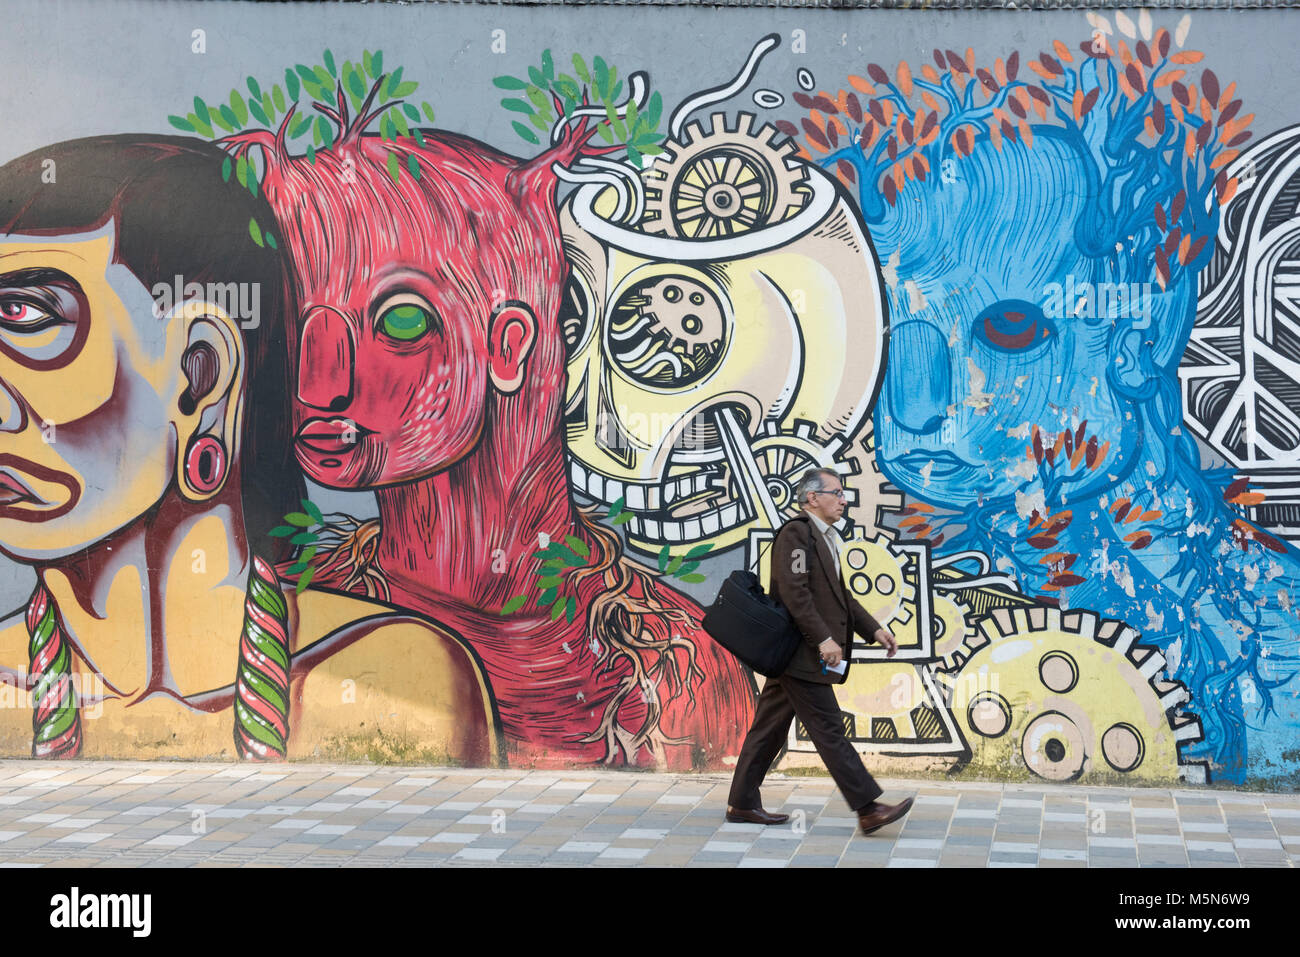 Un homme passe devant un mur de graffitis. Décore de nombreux espaces publics Graffiti à Bogota la capitale de la Colombie Banque D'Images